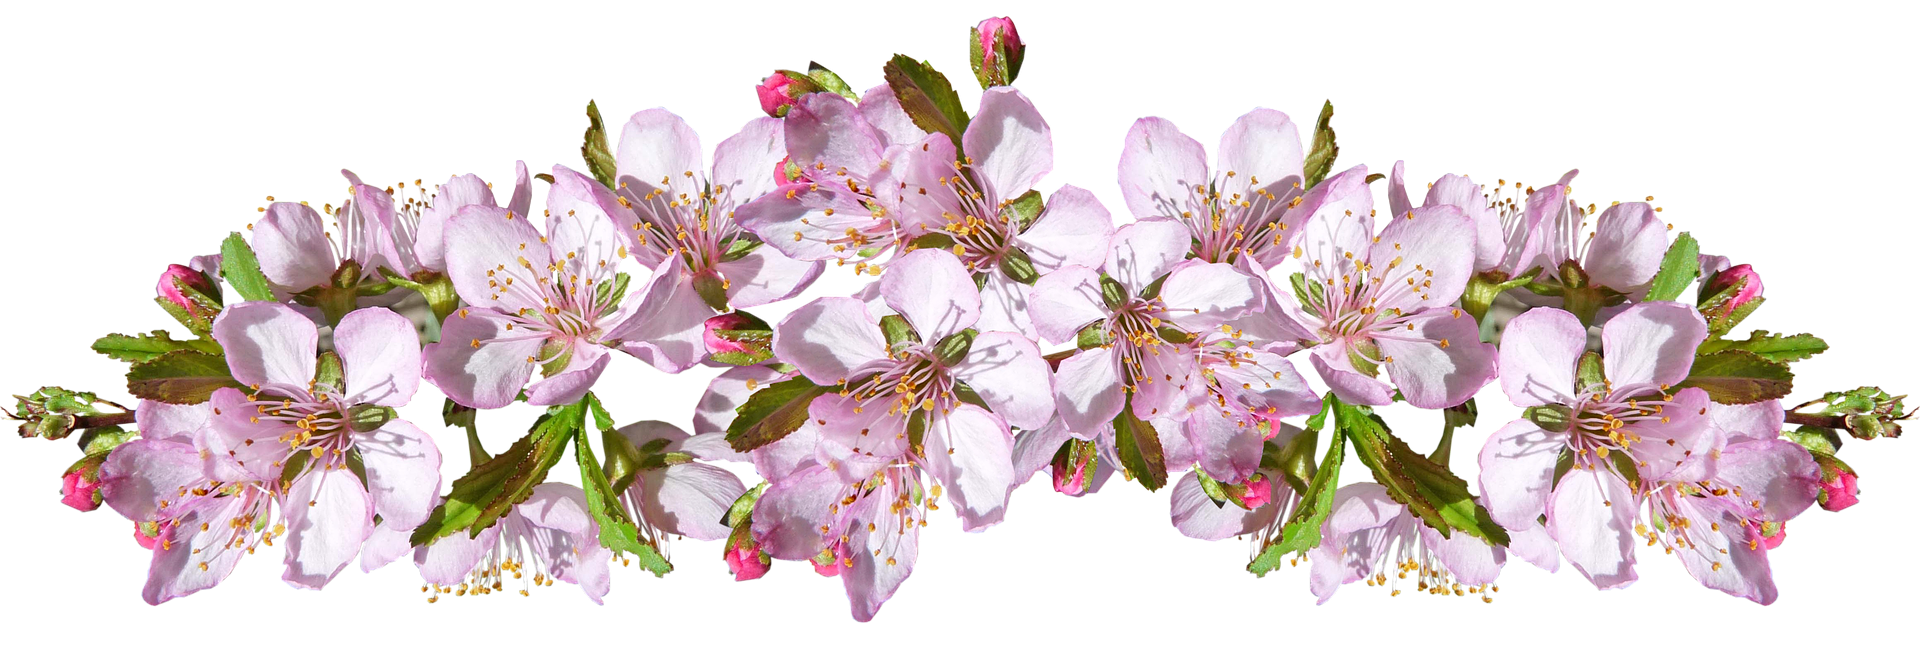 Цветок яблони фото крупным планом на прозрачном фоне